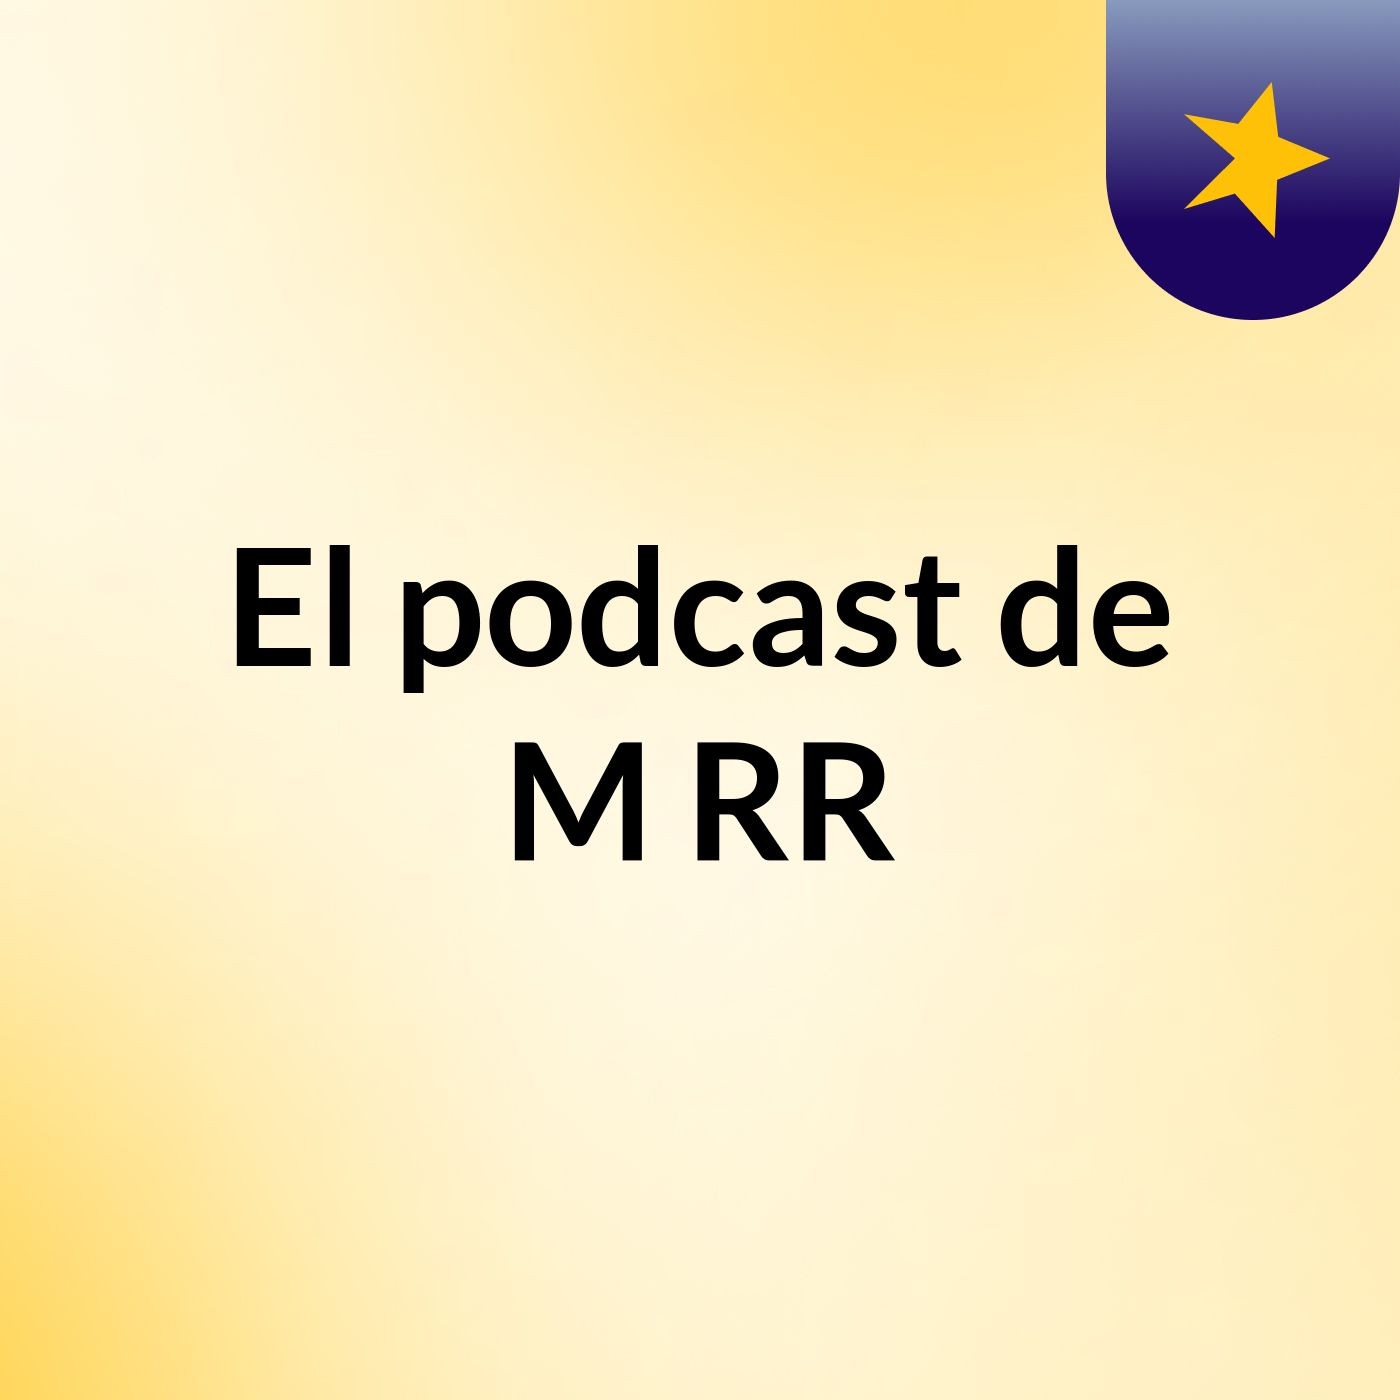 Episodio 4 - El podcast de M RR